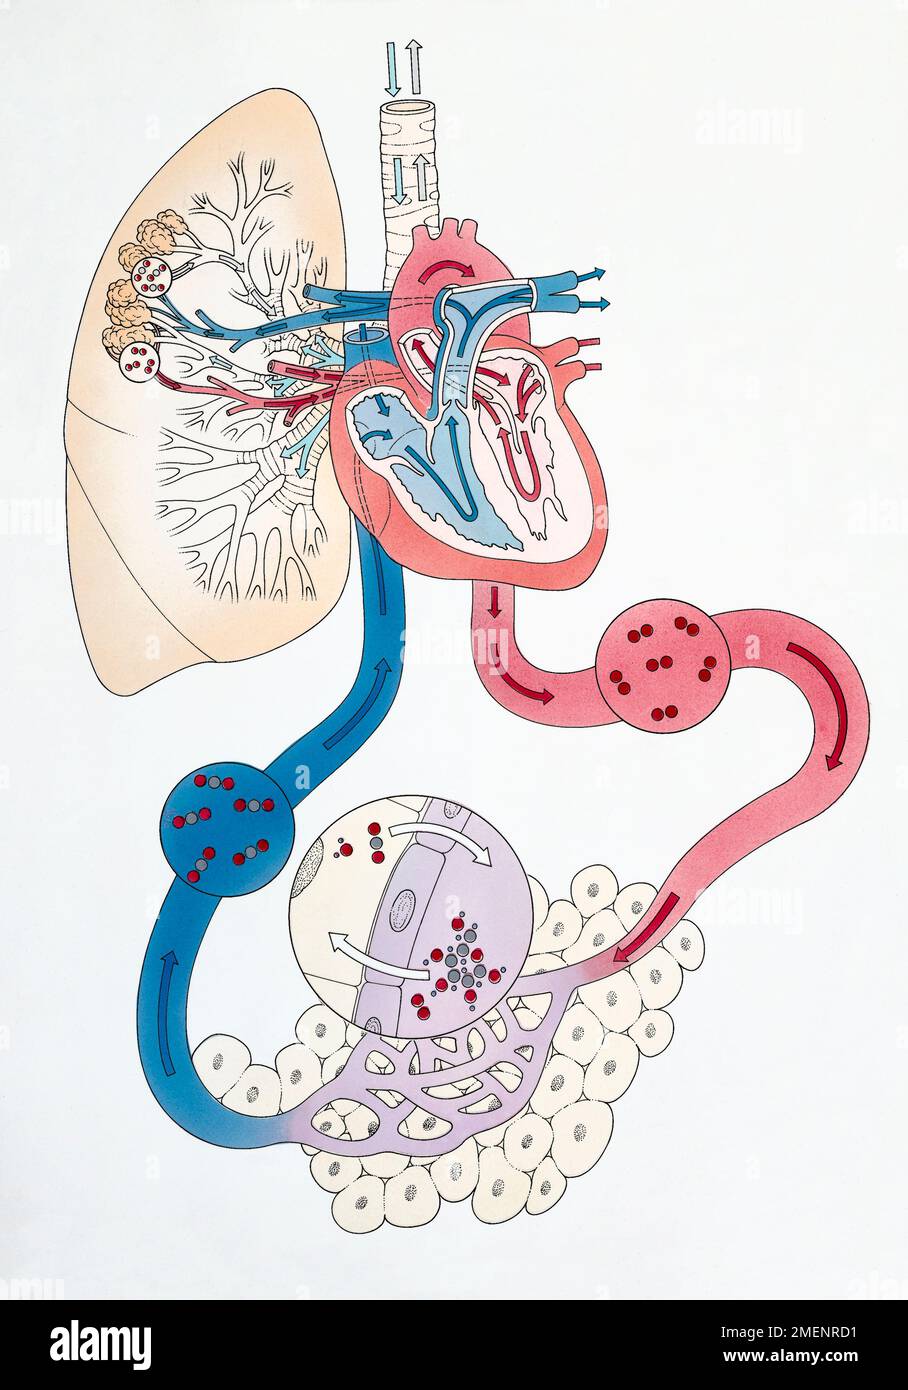 Trois diagrammes montrant le flux de sang désoxygéné qui traverse le cœur Banque D'Images